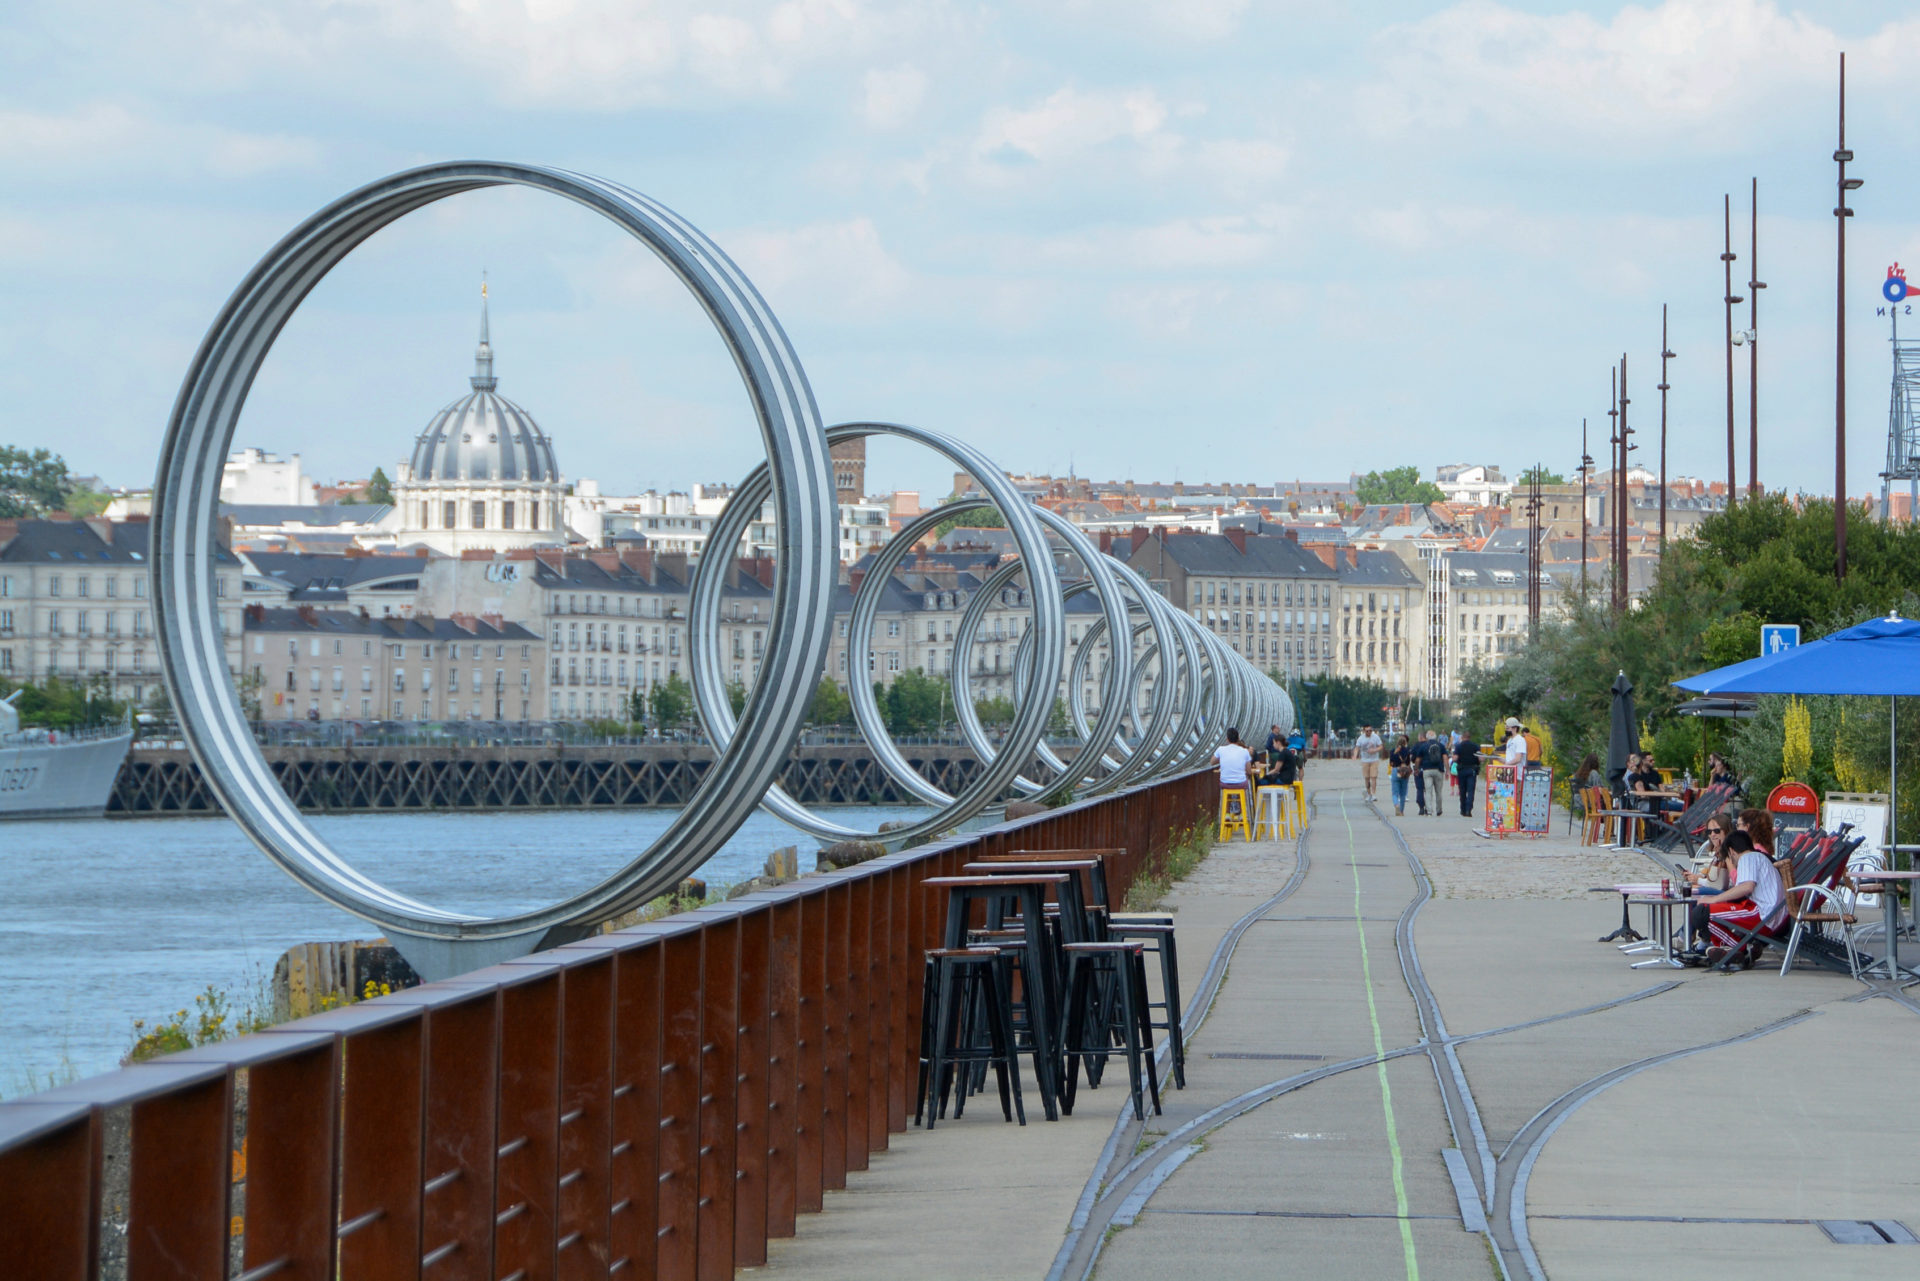 Die Installation mit Ringen am Quai gehört zu den Highlights von Nantes